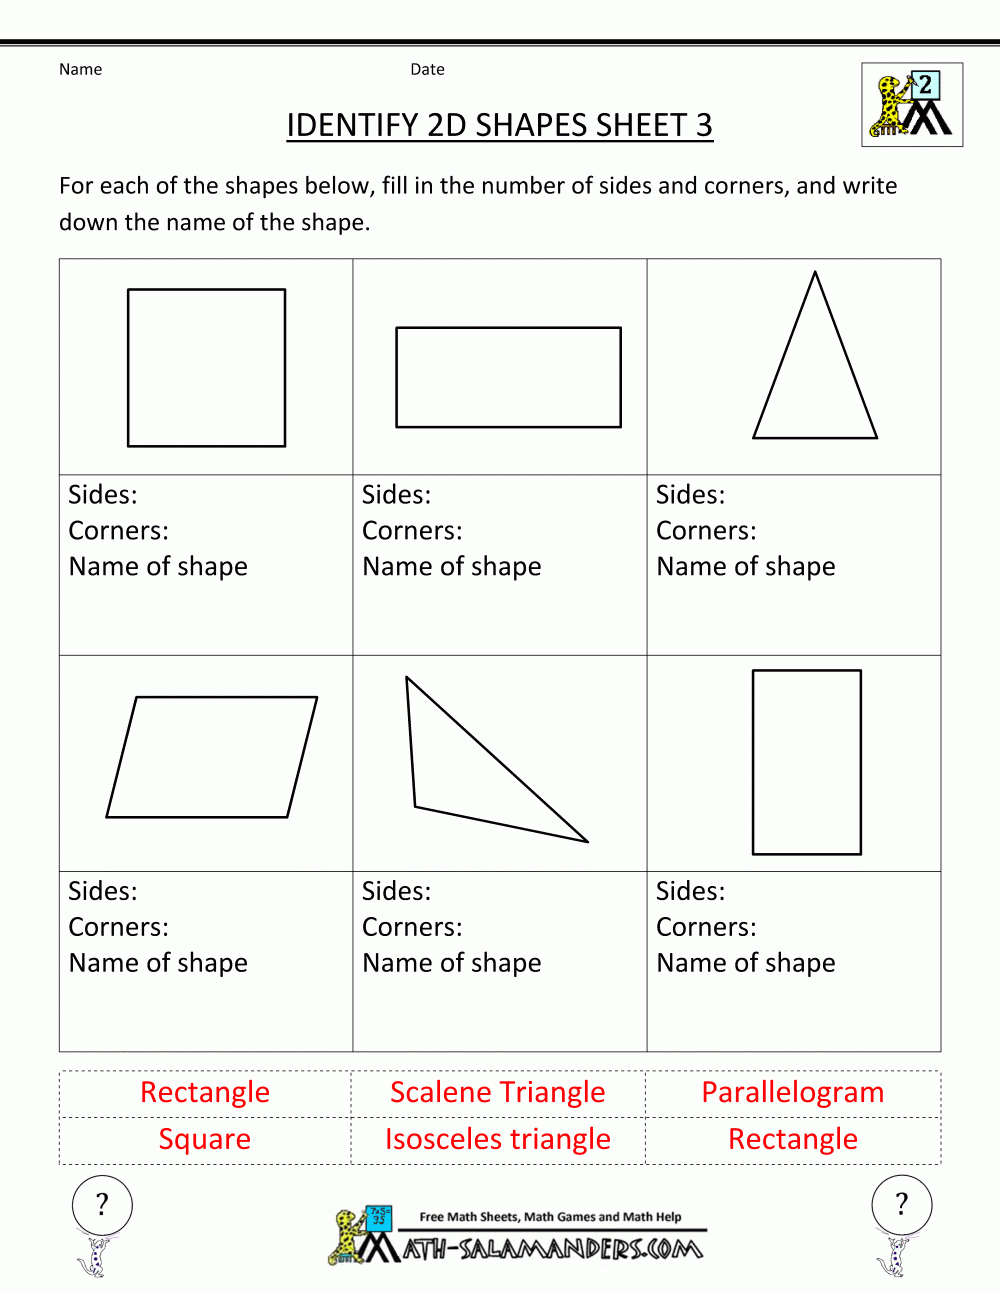 Identifying Shapes Worksheets 2nd Grade Backup Gambar